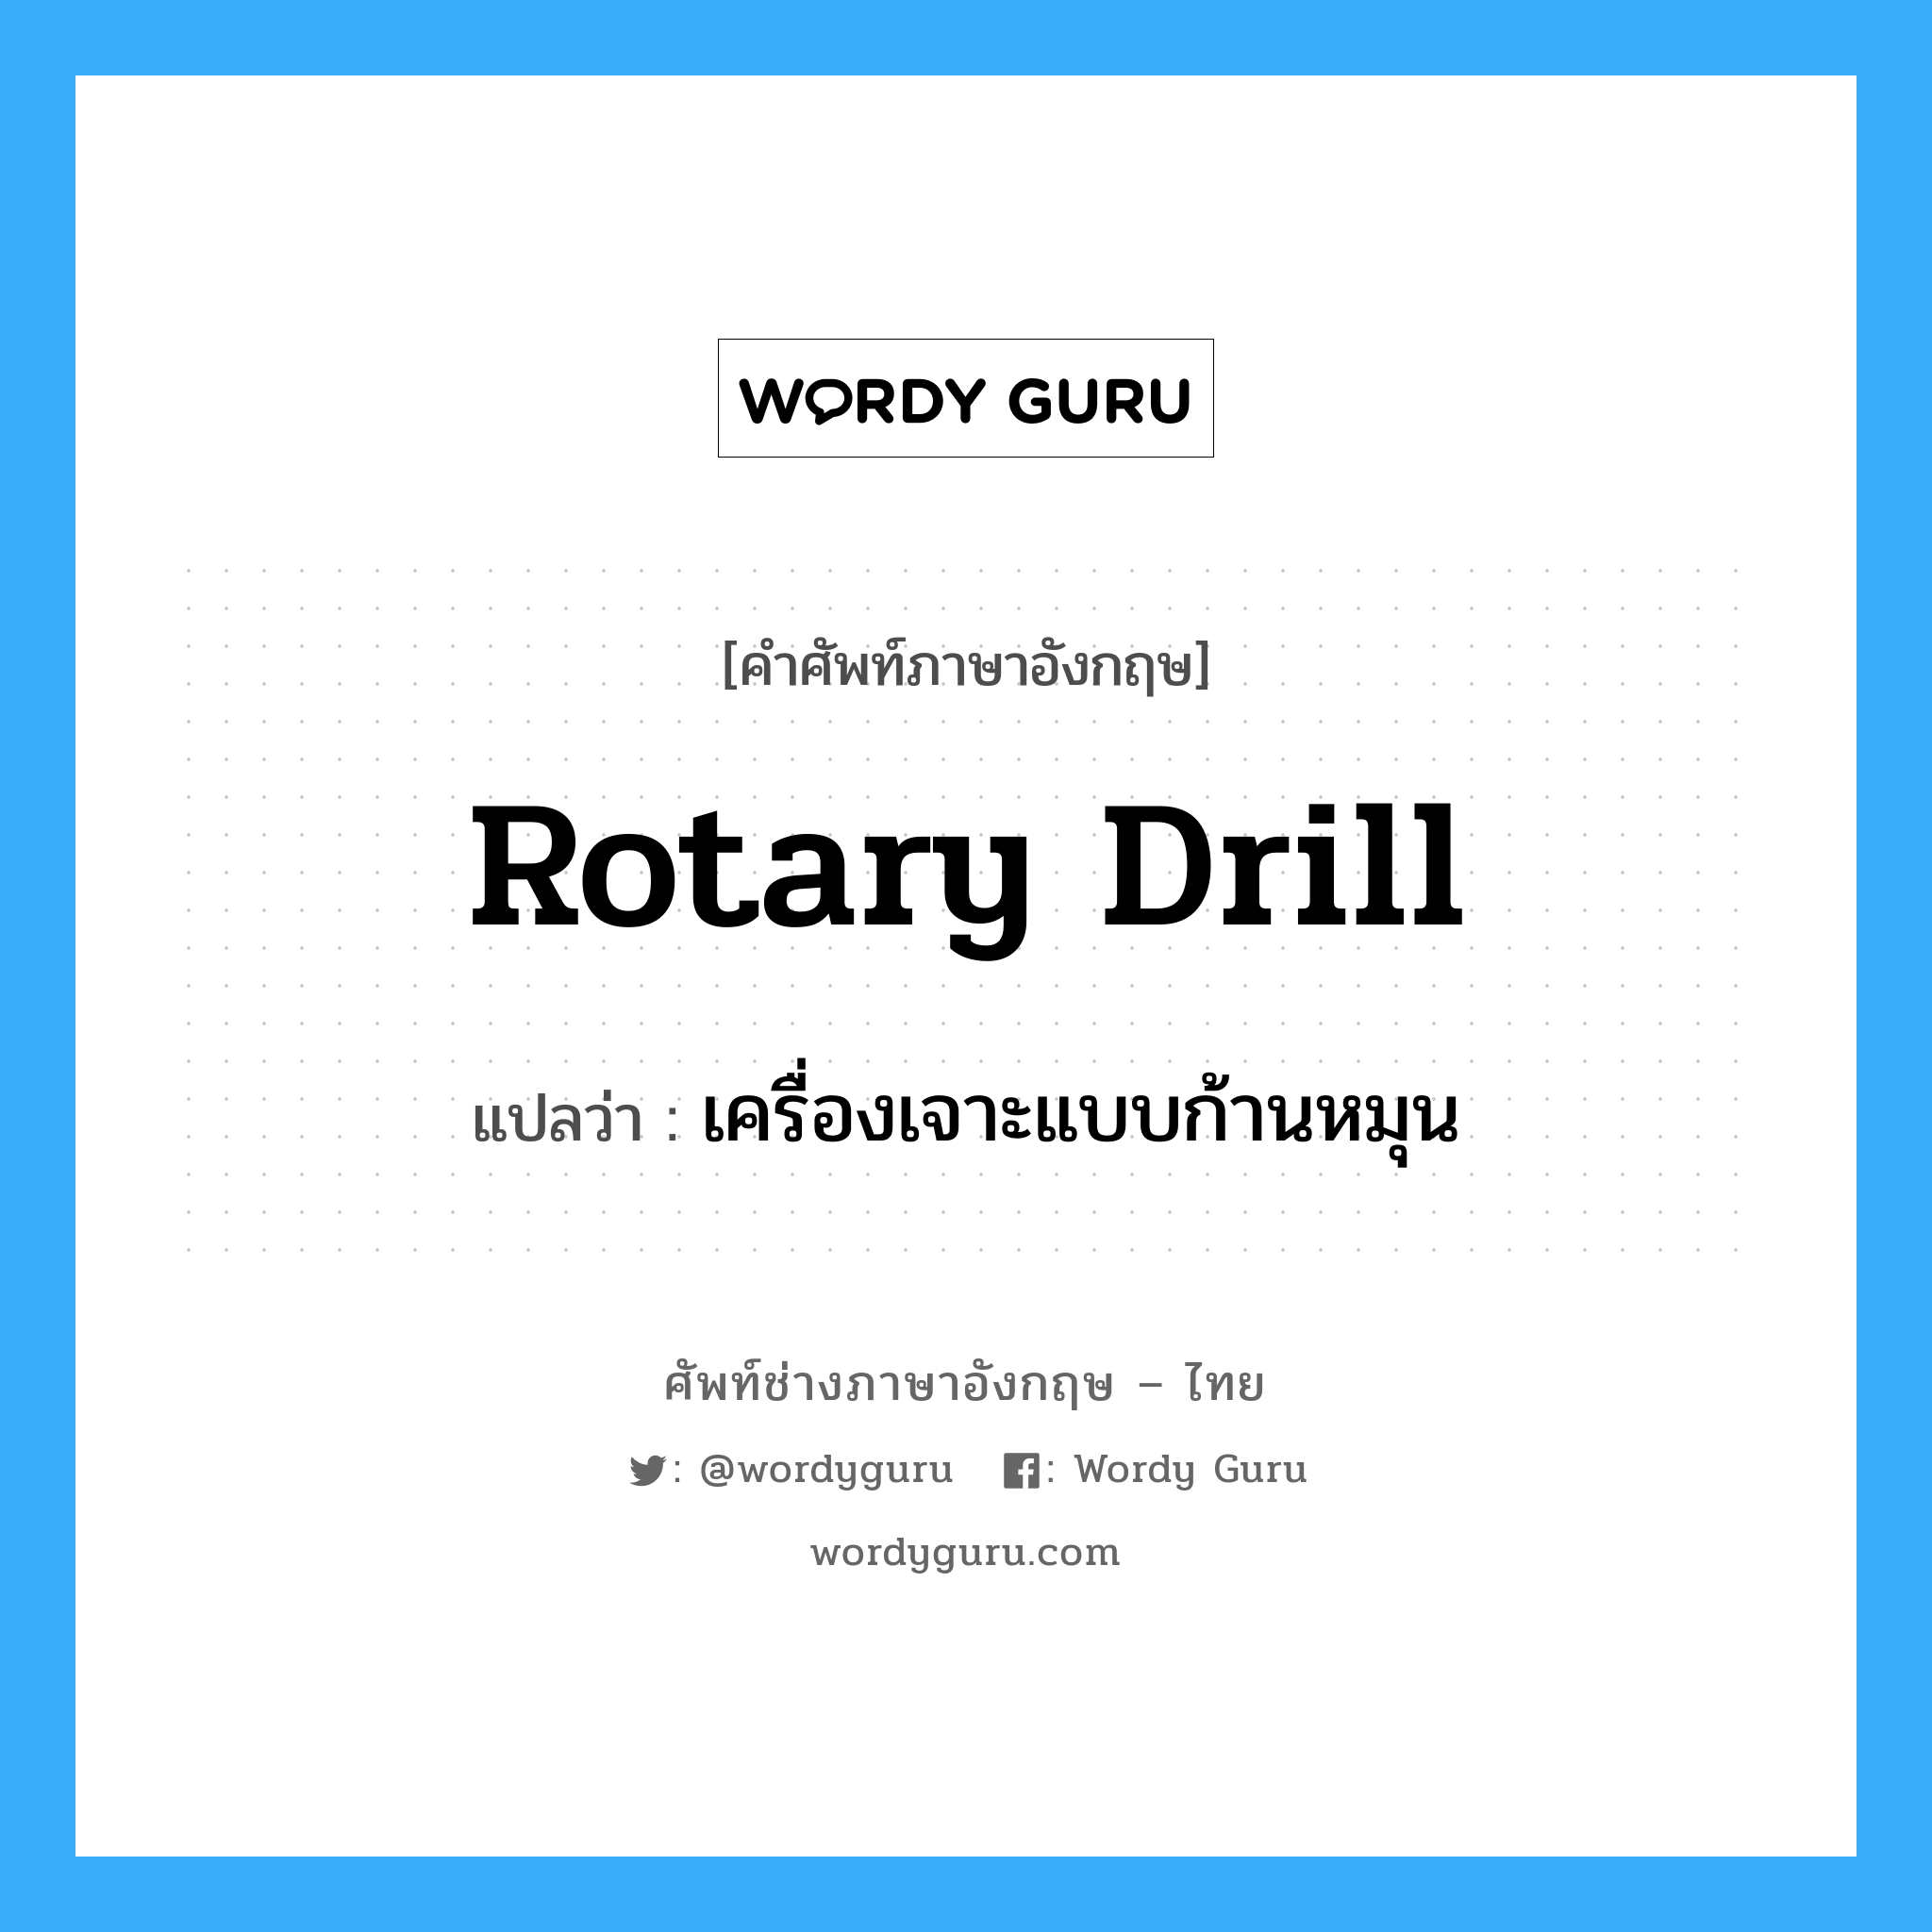 rotary drill แปลว่า?, คำศัพท์ช่างภาษาอังกฤษ - ไทย rotary drill คำศัพท์ภาษาอังกฤษ rotary drill แปลว่า เครื่องเจาะแบบก้านหมุน